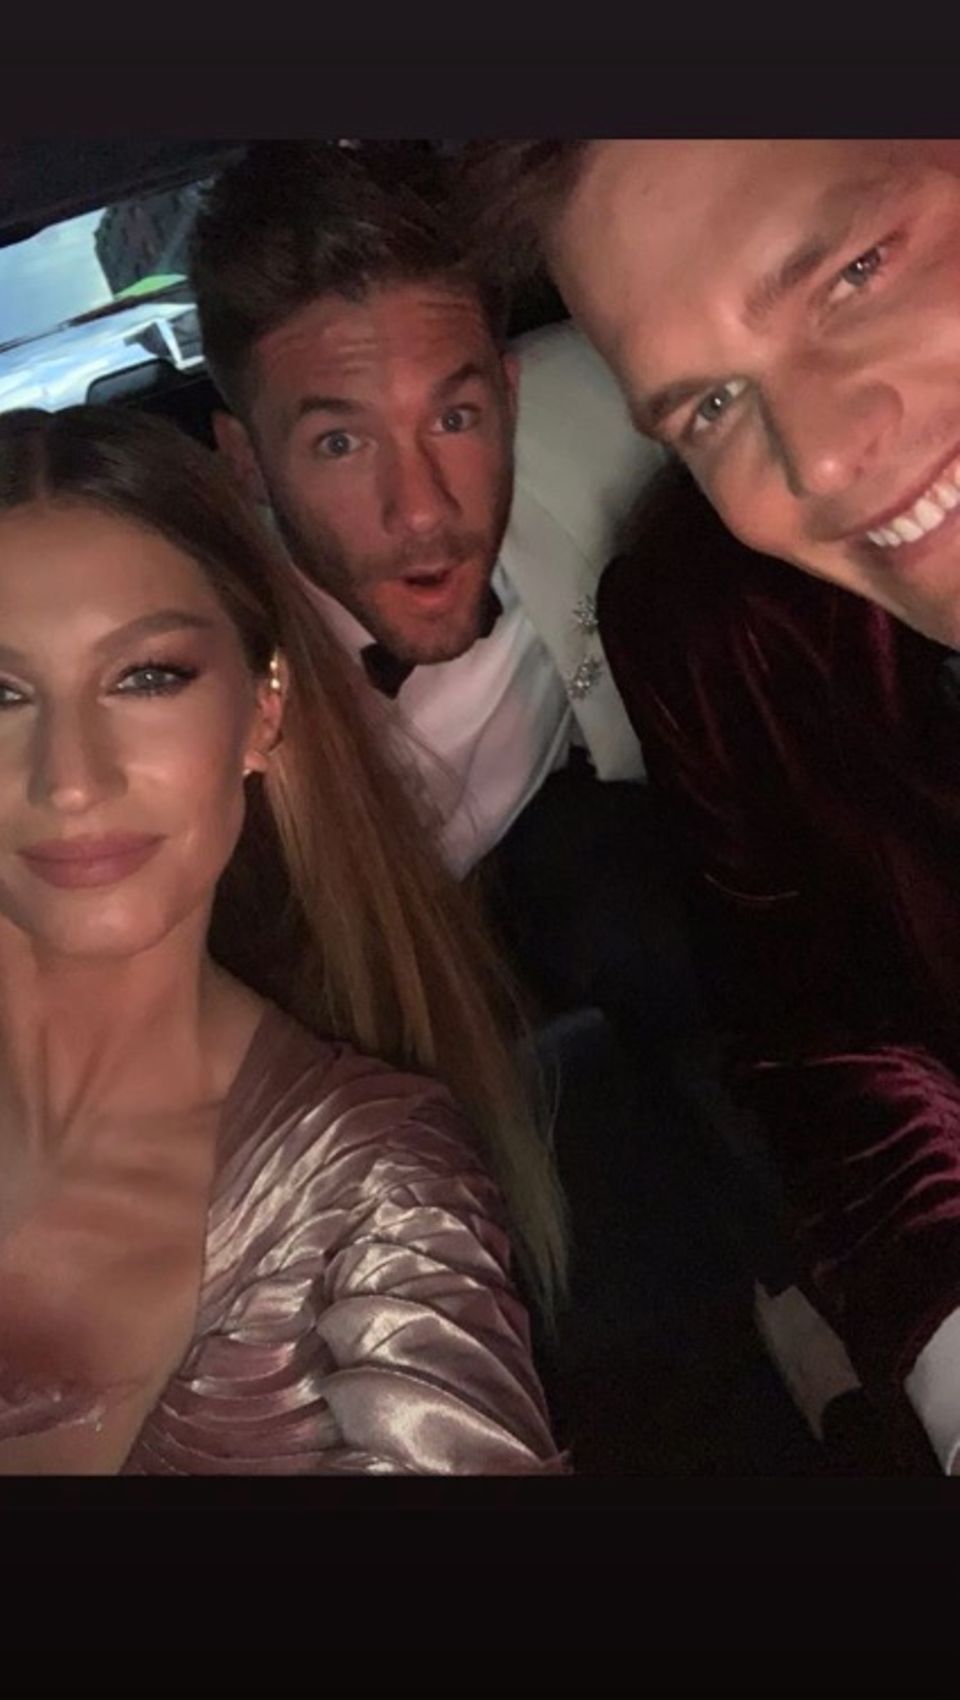 Um das Selfie-verbot auf der Met Gala zu umgehen, knipsen Gisele Bündchen und Ehemann Tom Brady im Auto ein letztes Erinnerungsfoto.